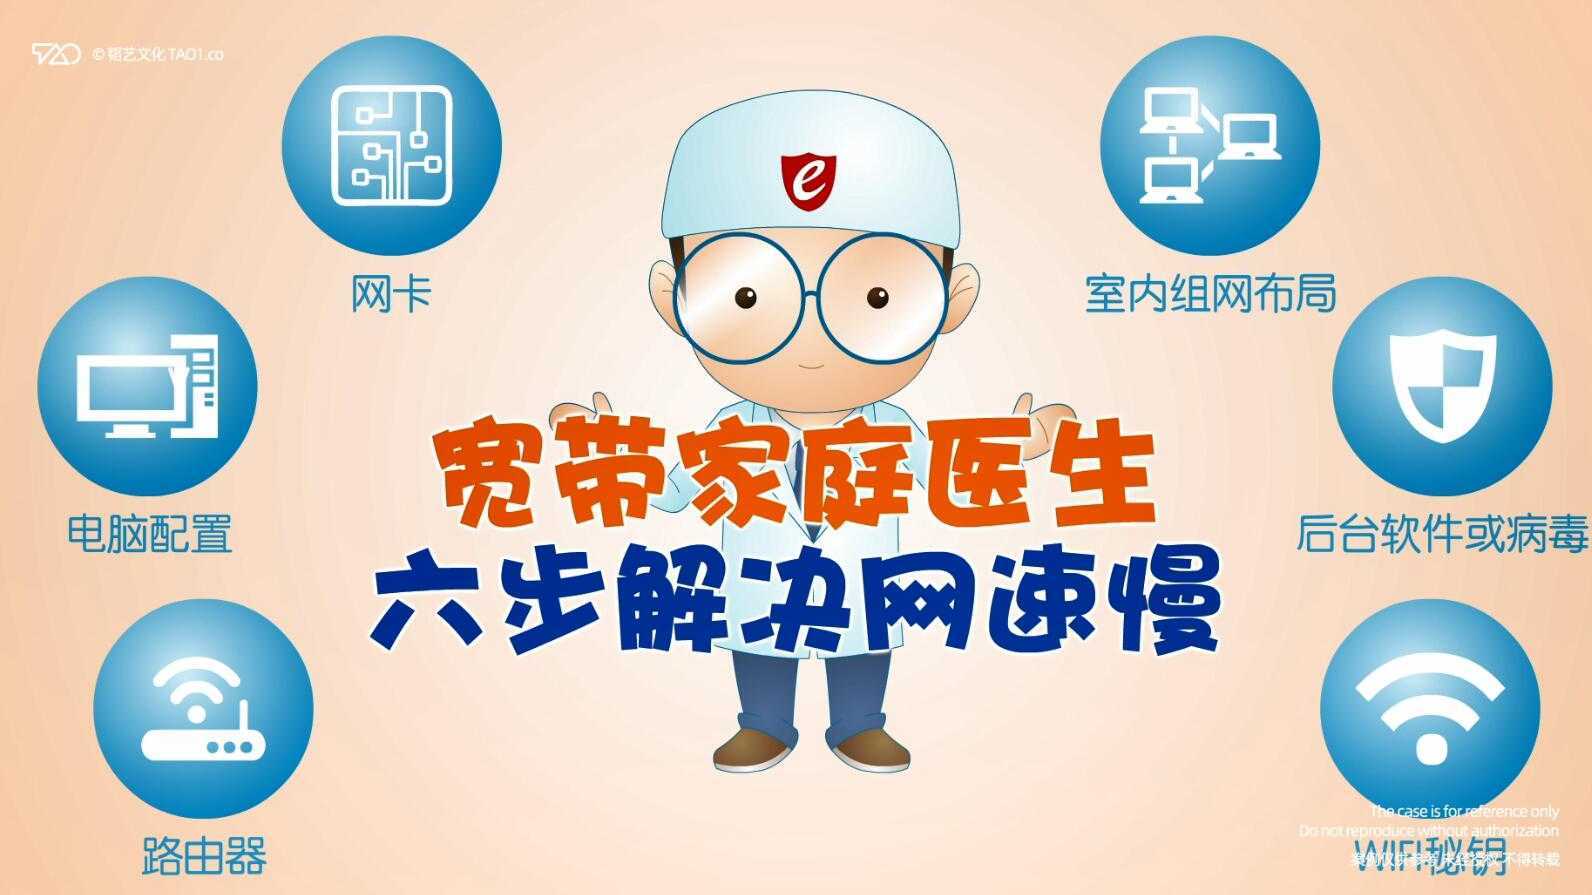 [原创动画制作]中国电信 宽带家庭医生六步解决网速慢 宣传片